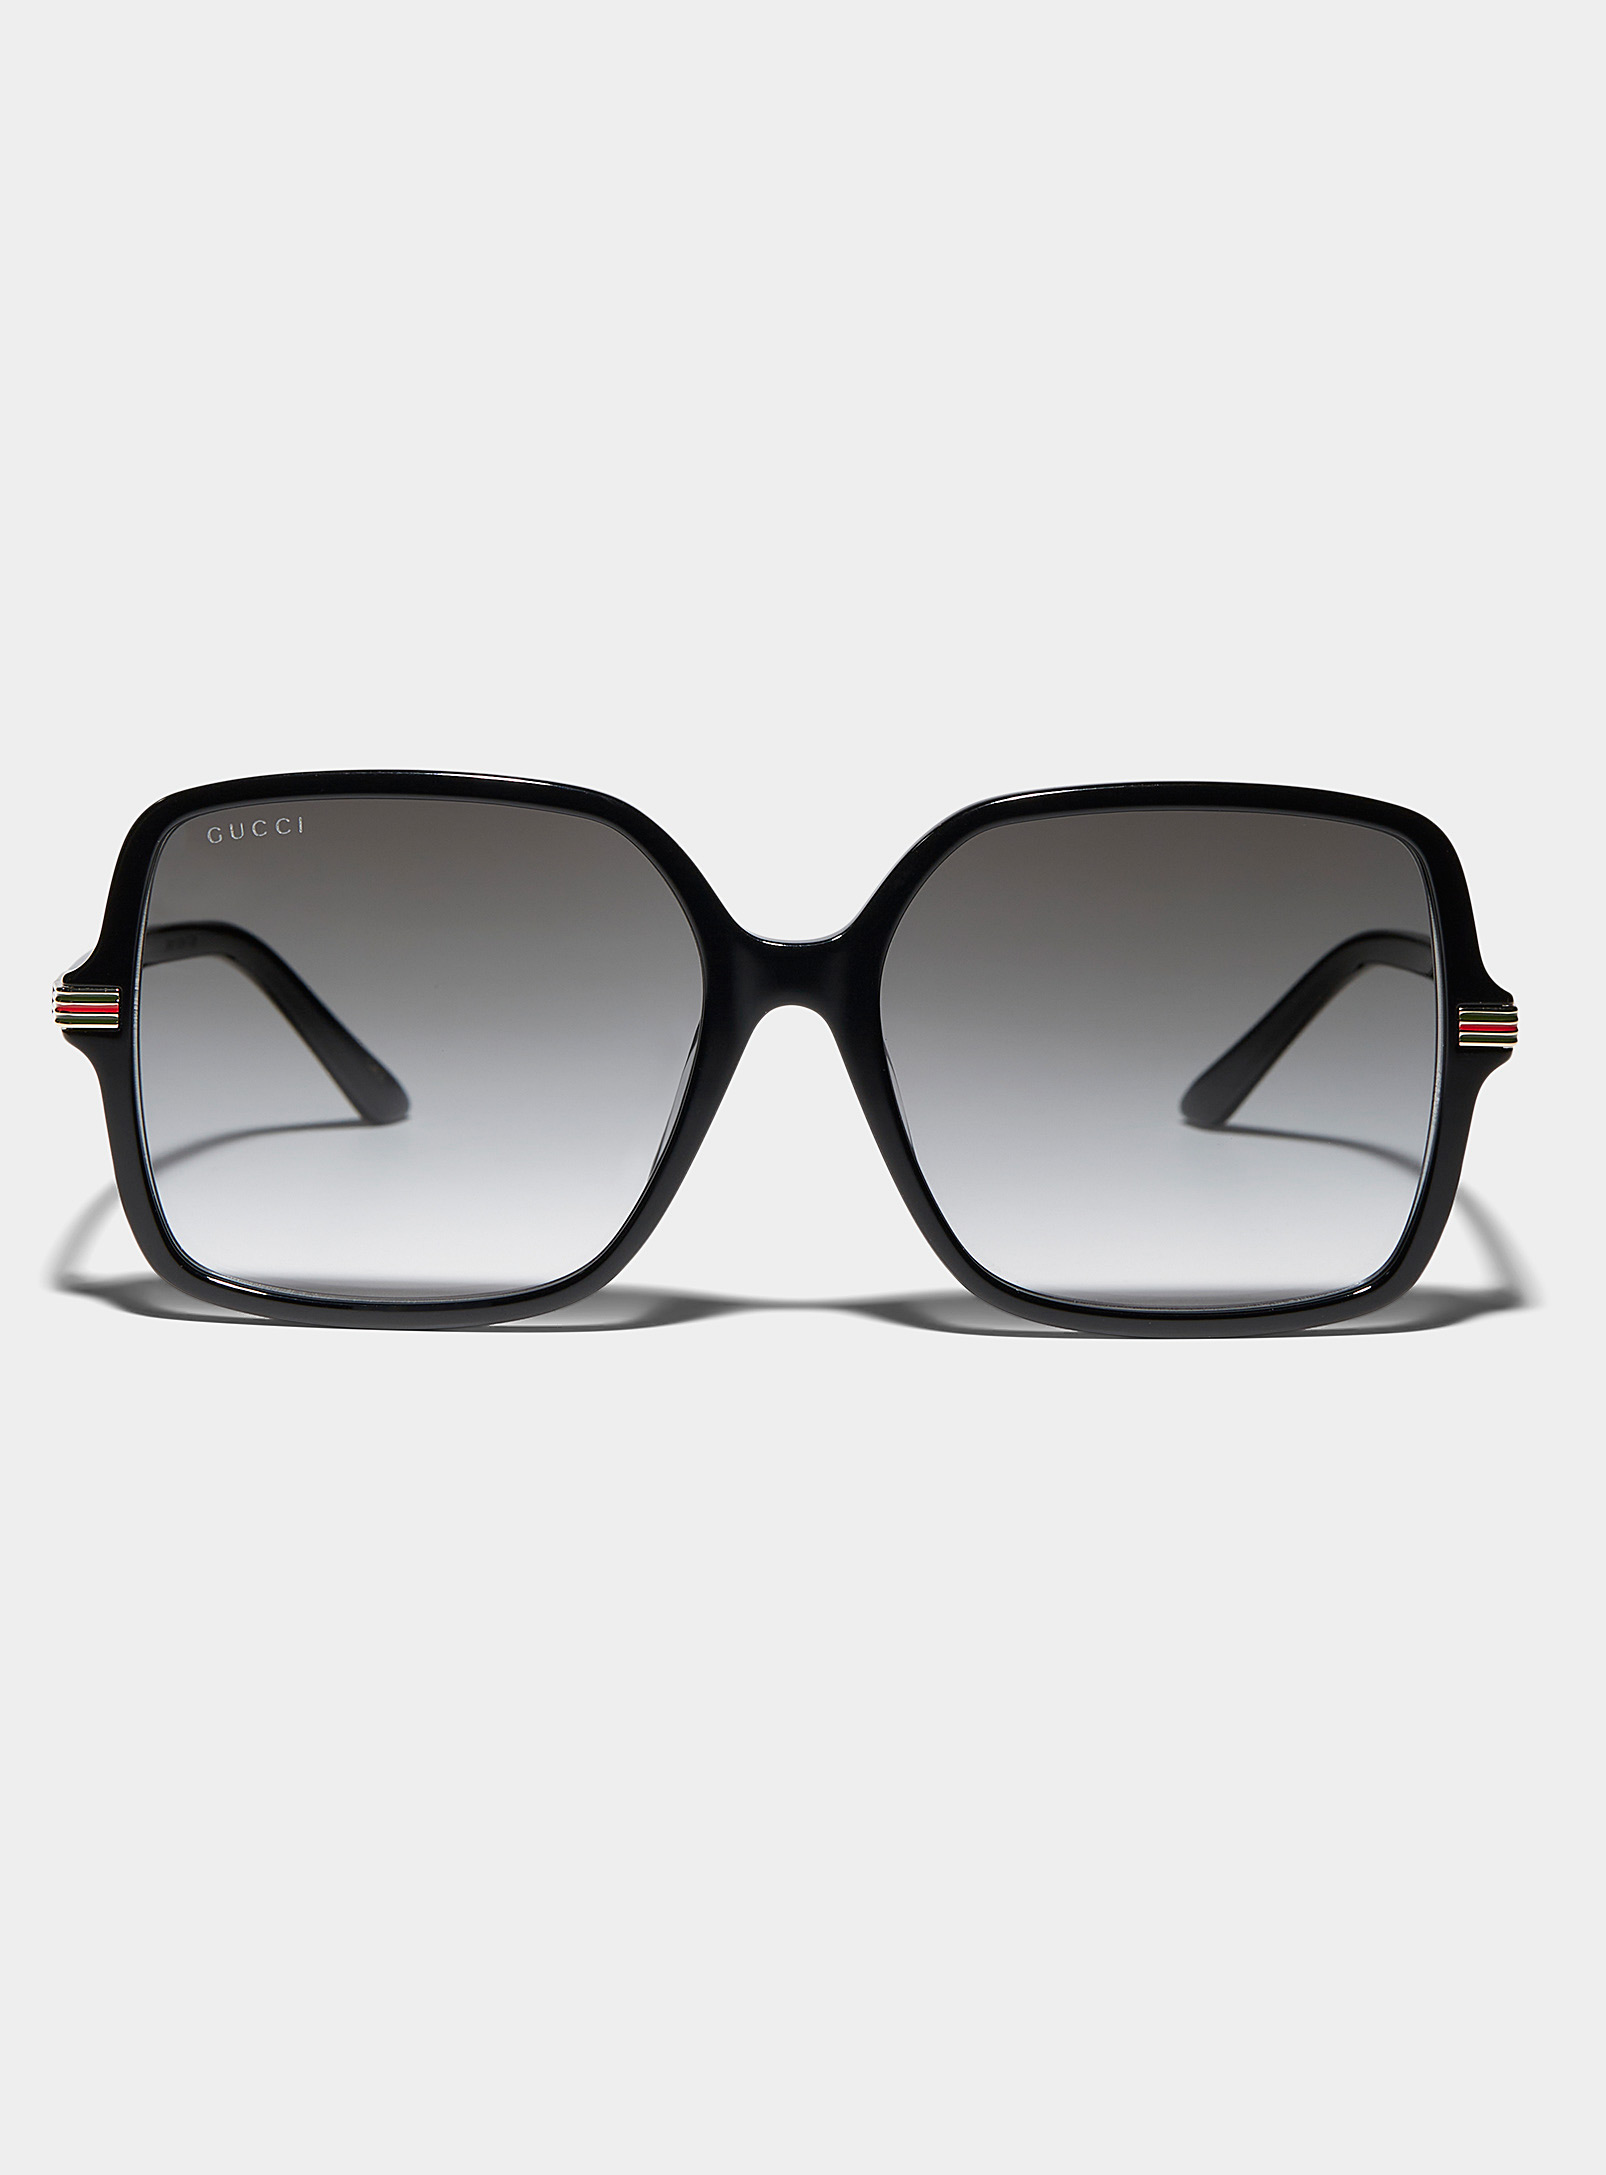 Gucci Archive Stripes Square Sunglasses In Black